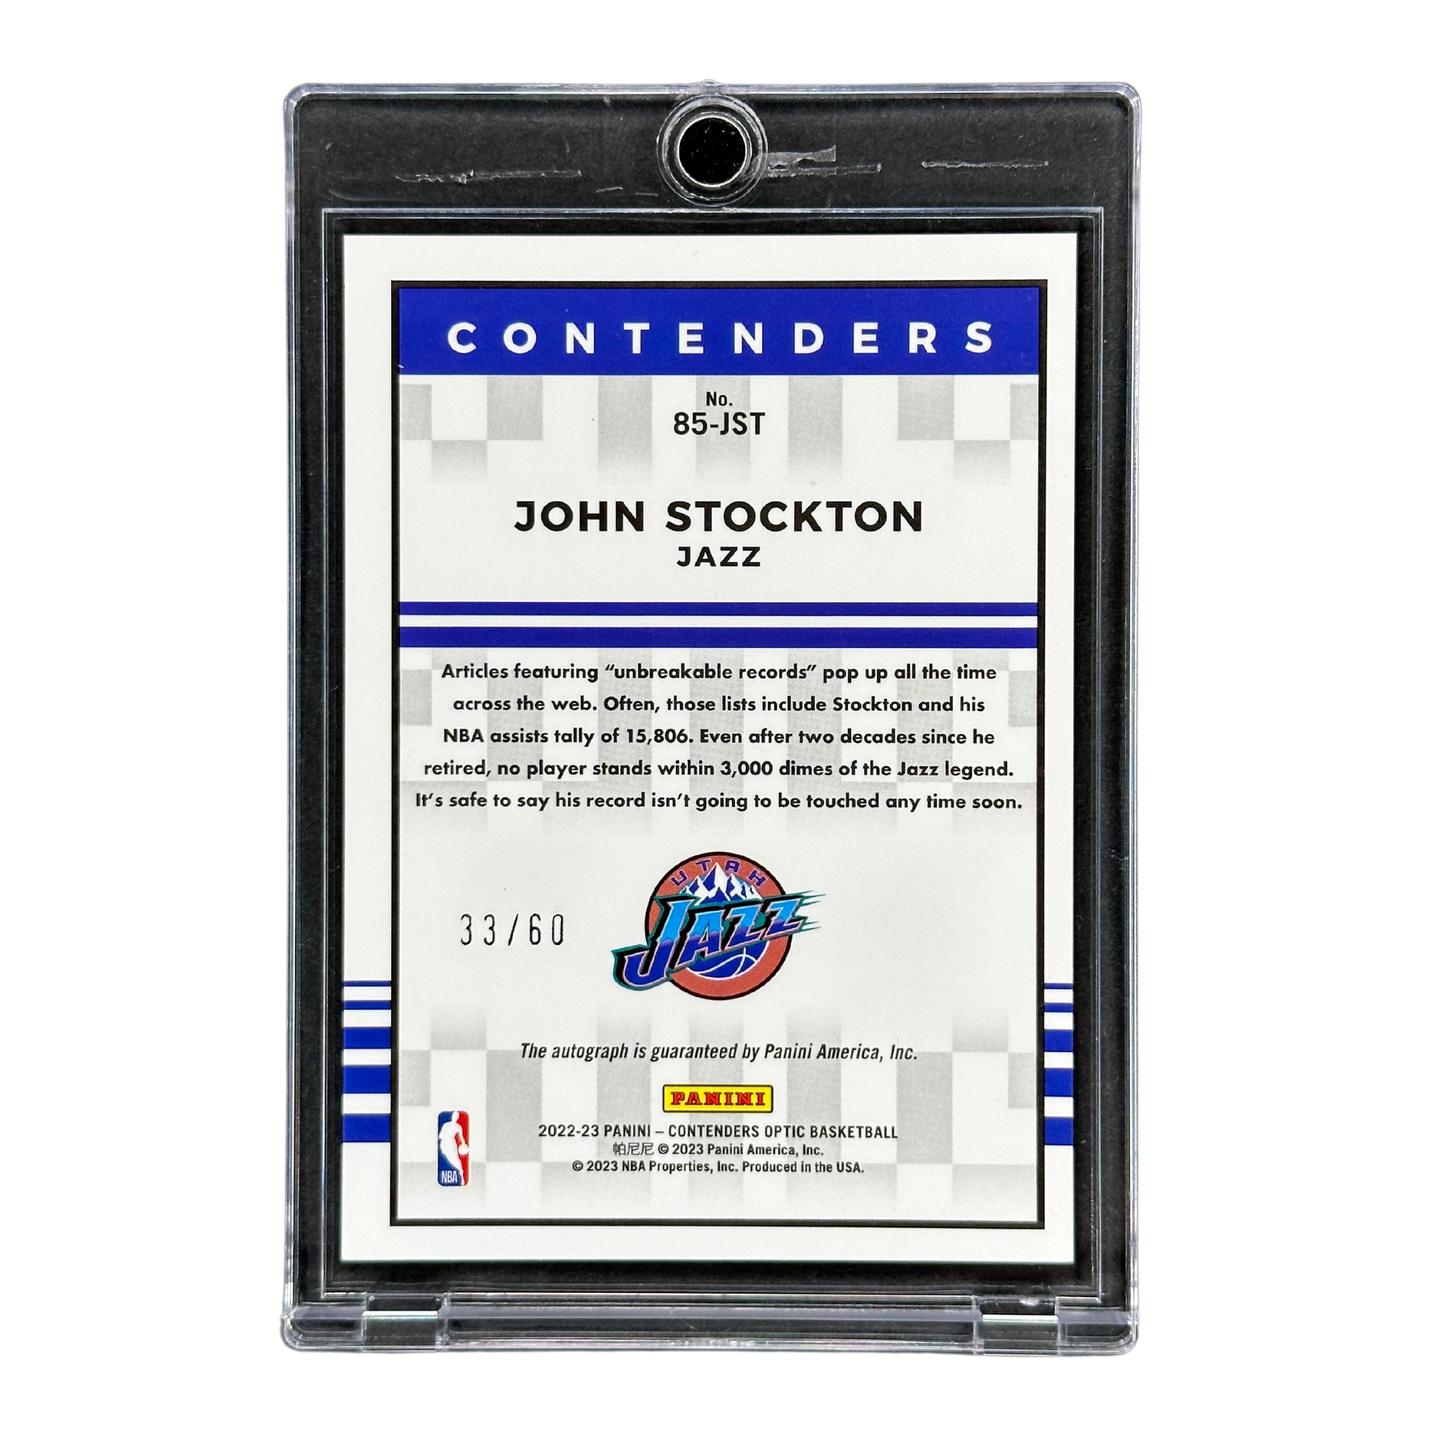 John Stockton 2022 Contenders Optic Auto 33/60 #85-JST